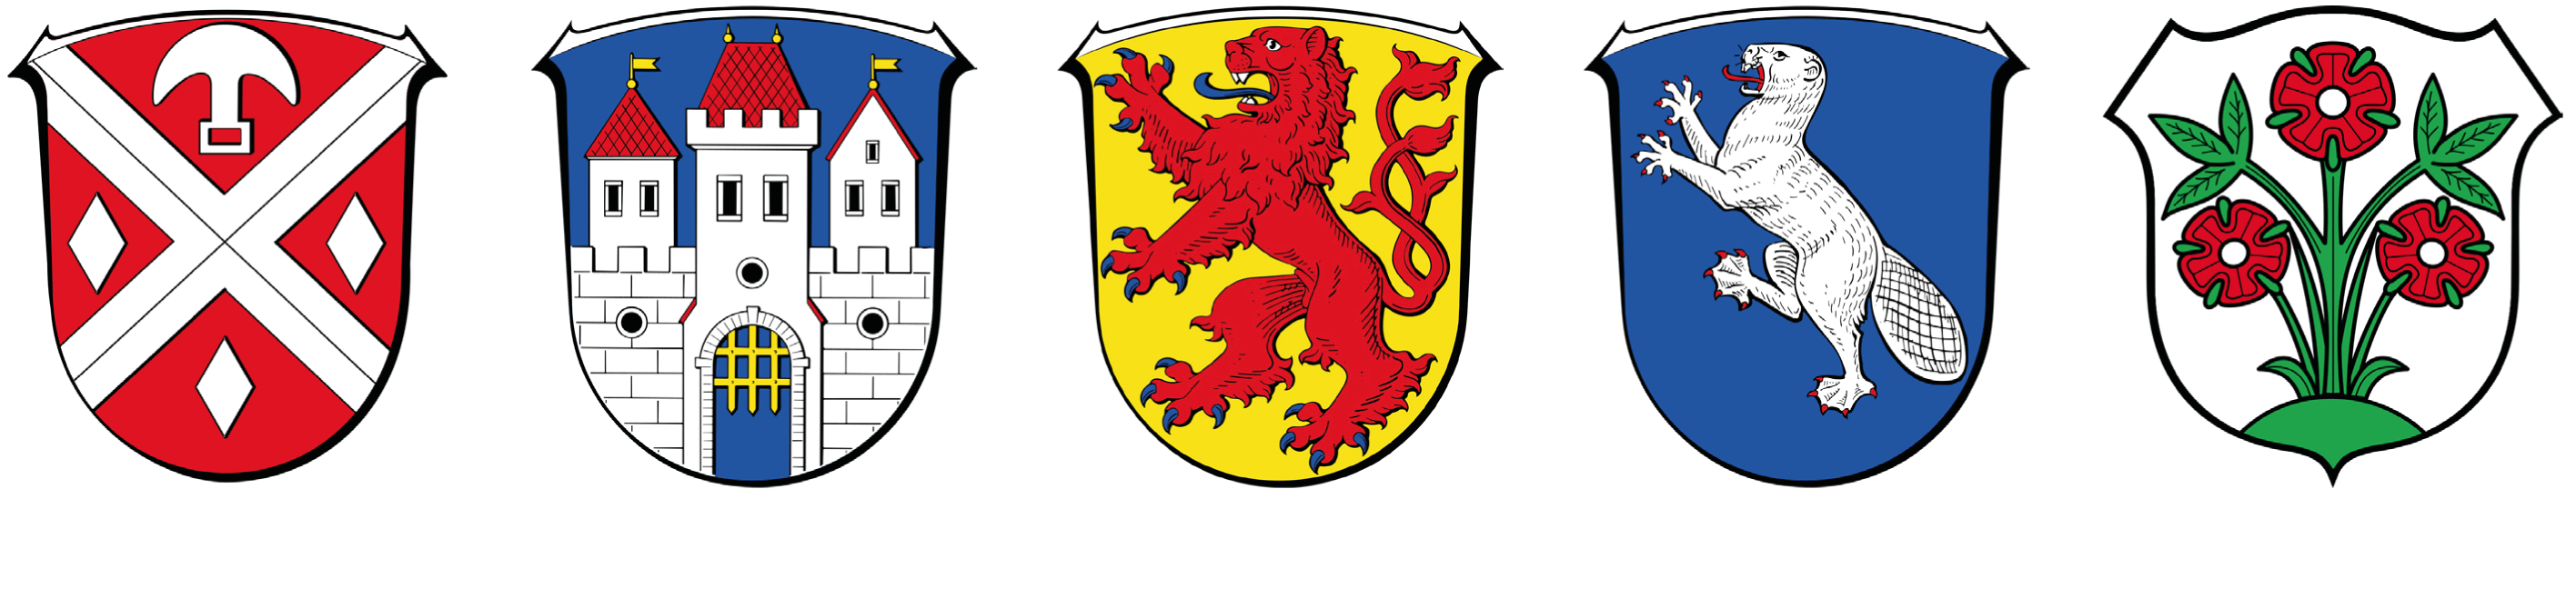 Wappen von Modautal, Fischbachtal, Reinheim, Gross-Bieberau, Ober-Ramstadt